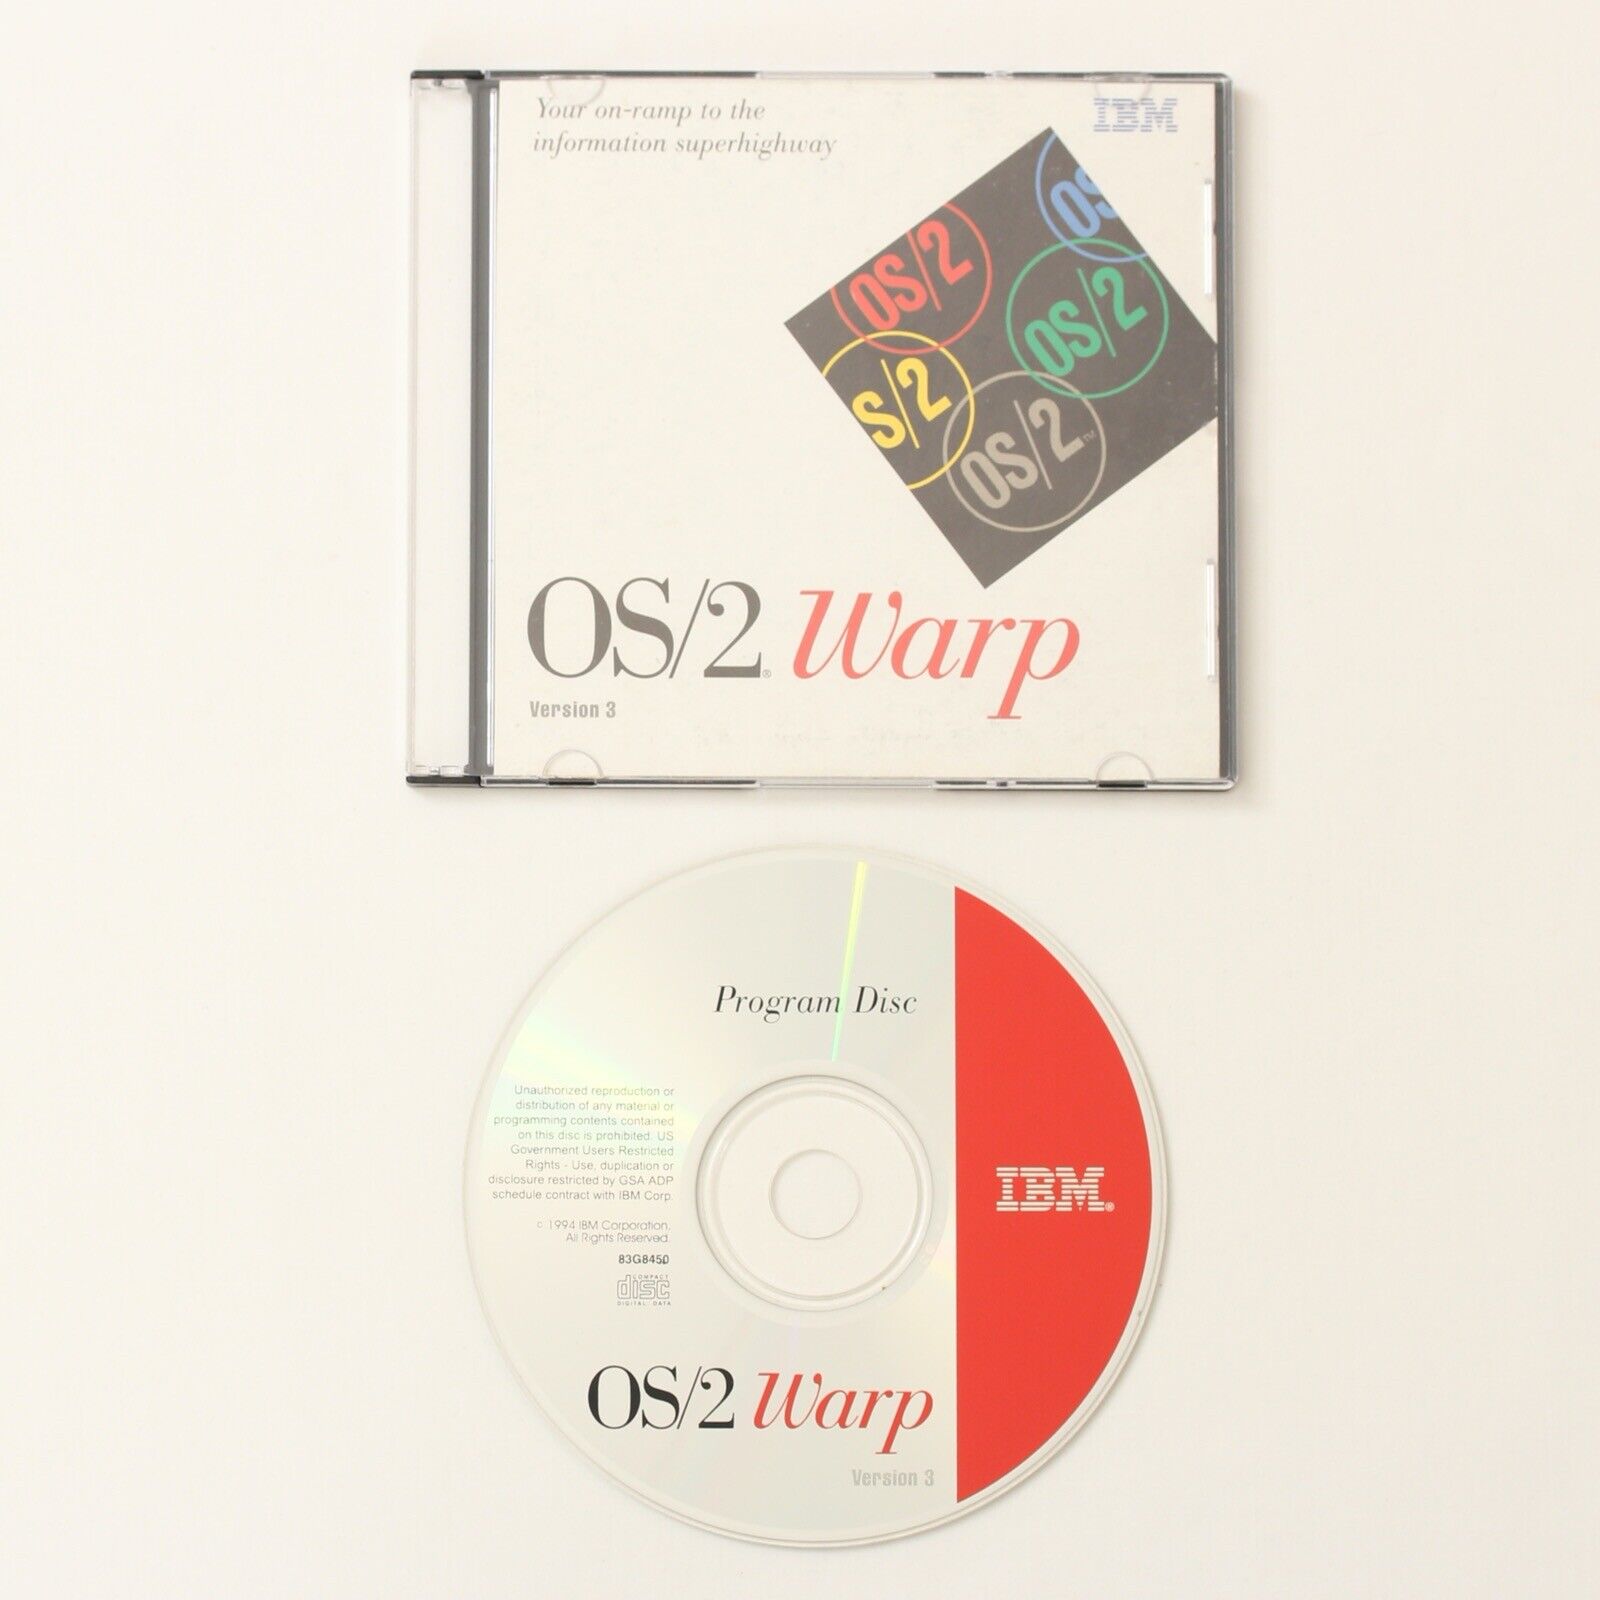 IBM OS/2 Warp (Version 3) Operating System Software